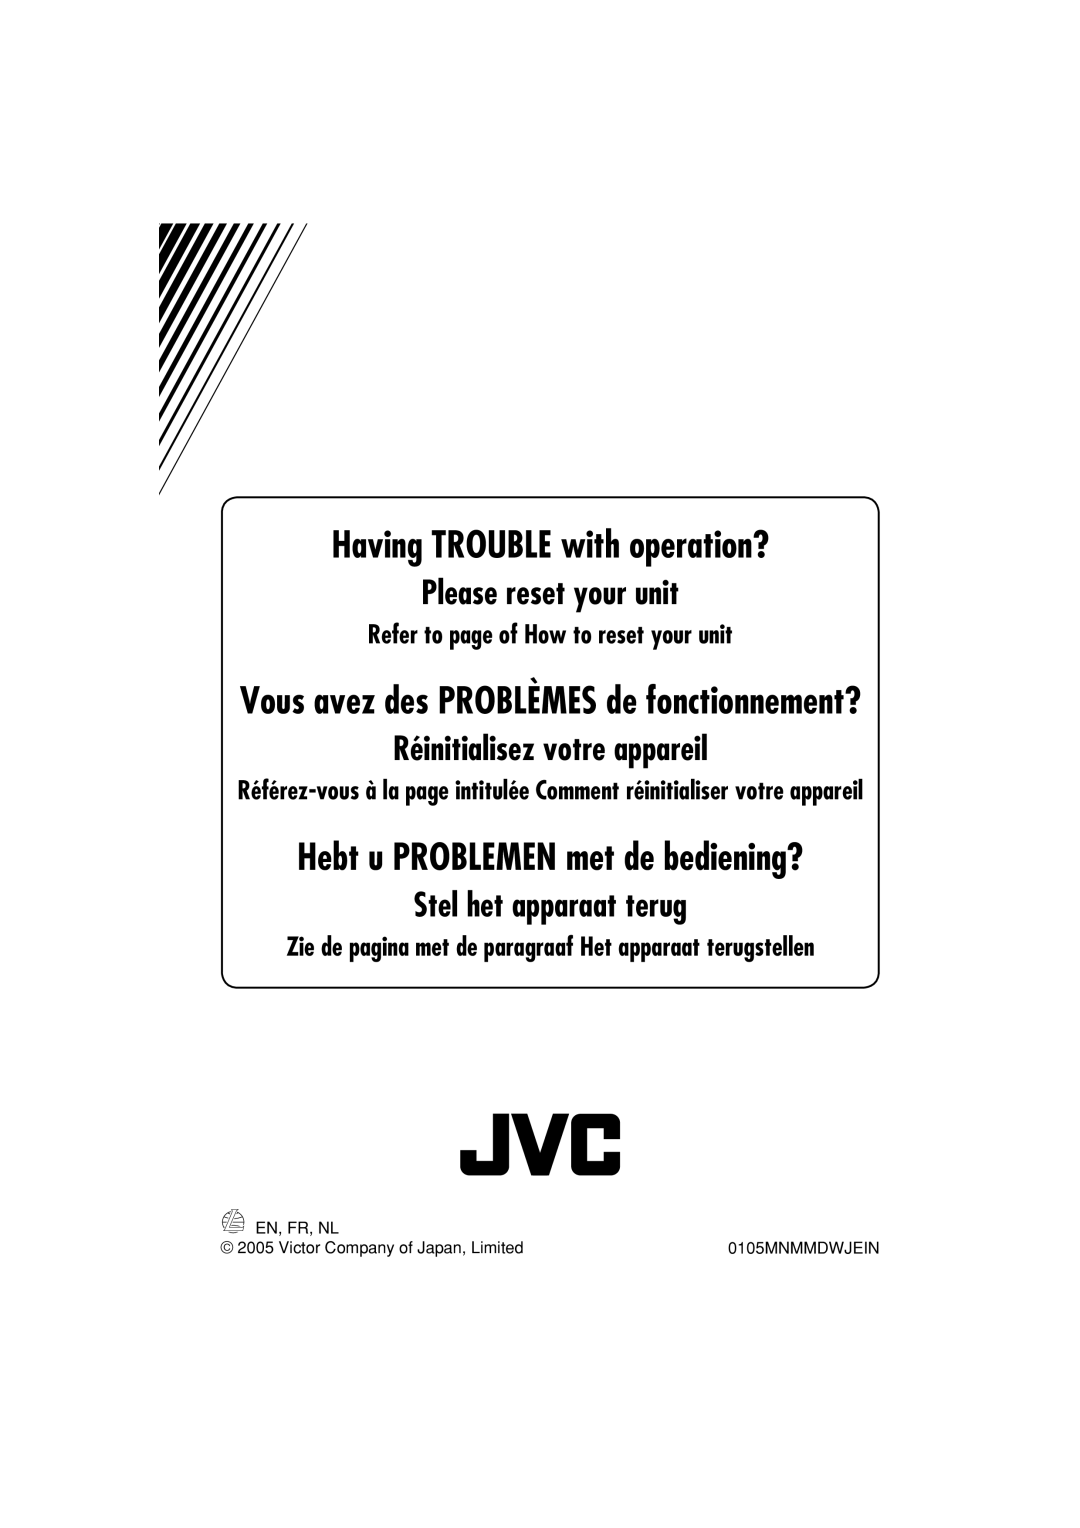 JVC KD-DB711 manual Please reset your unit, Réinitialisez votre appareil, Hebt u PROBLEMEN met de bediening? 